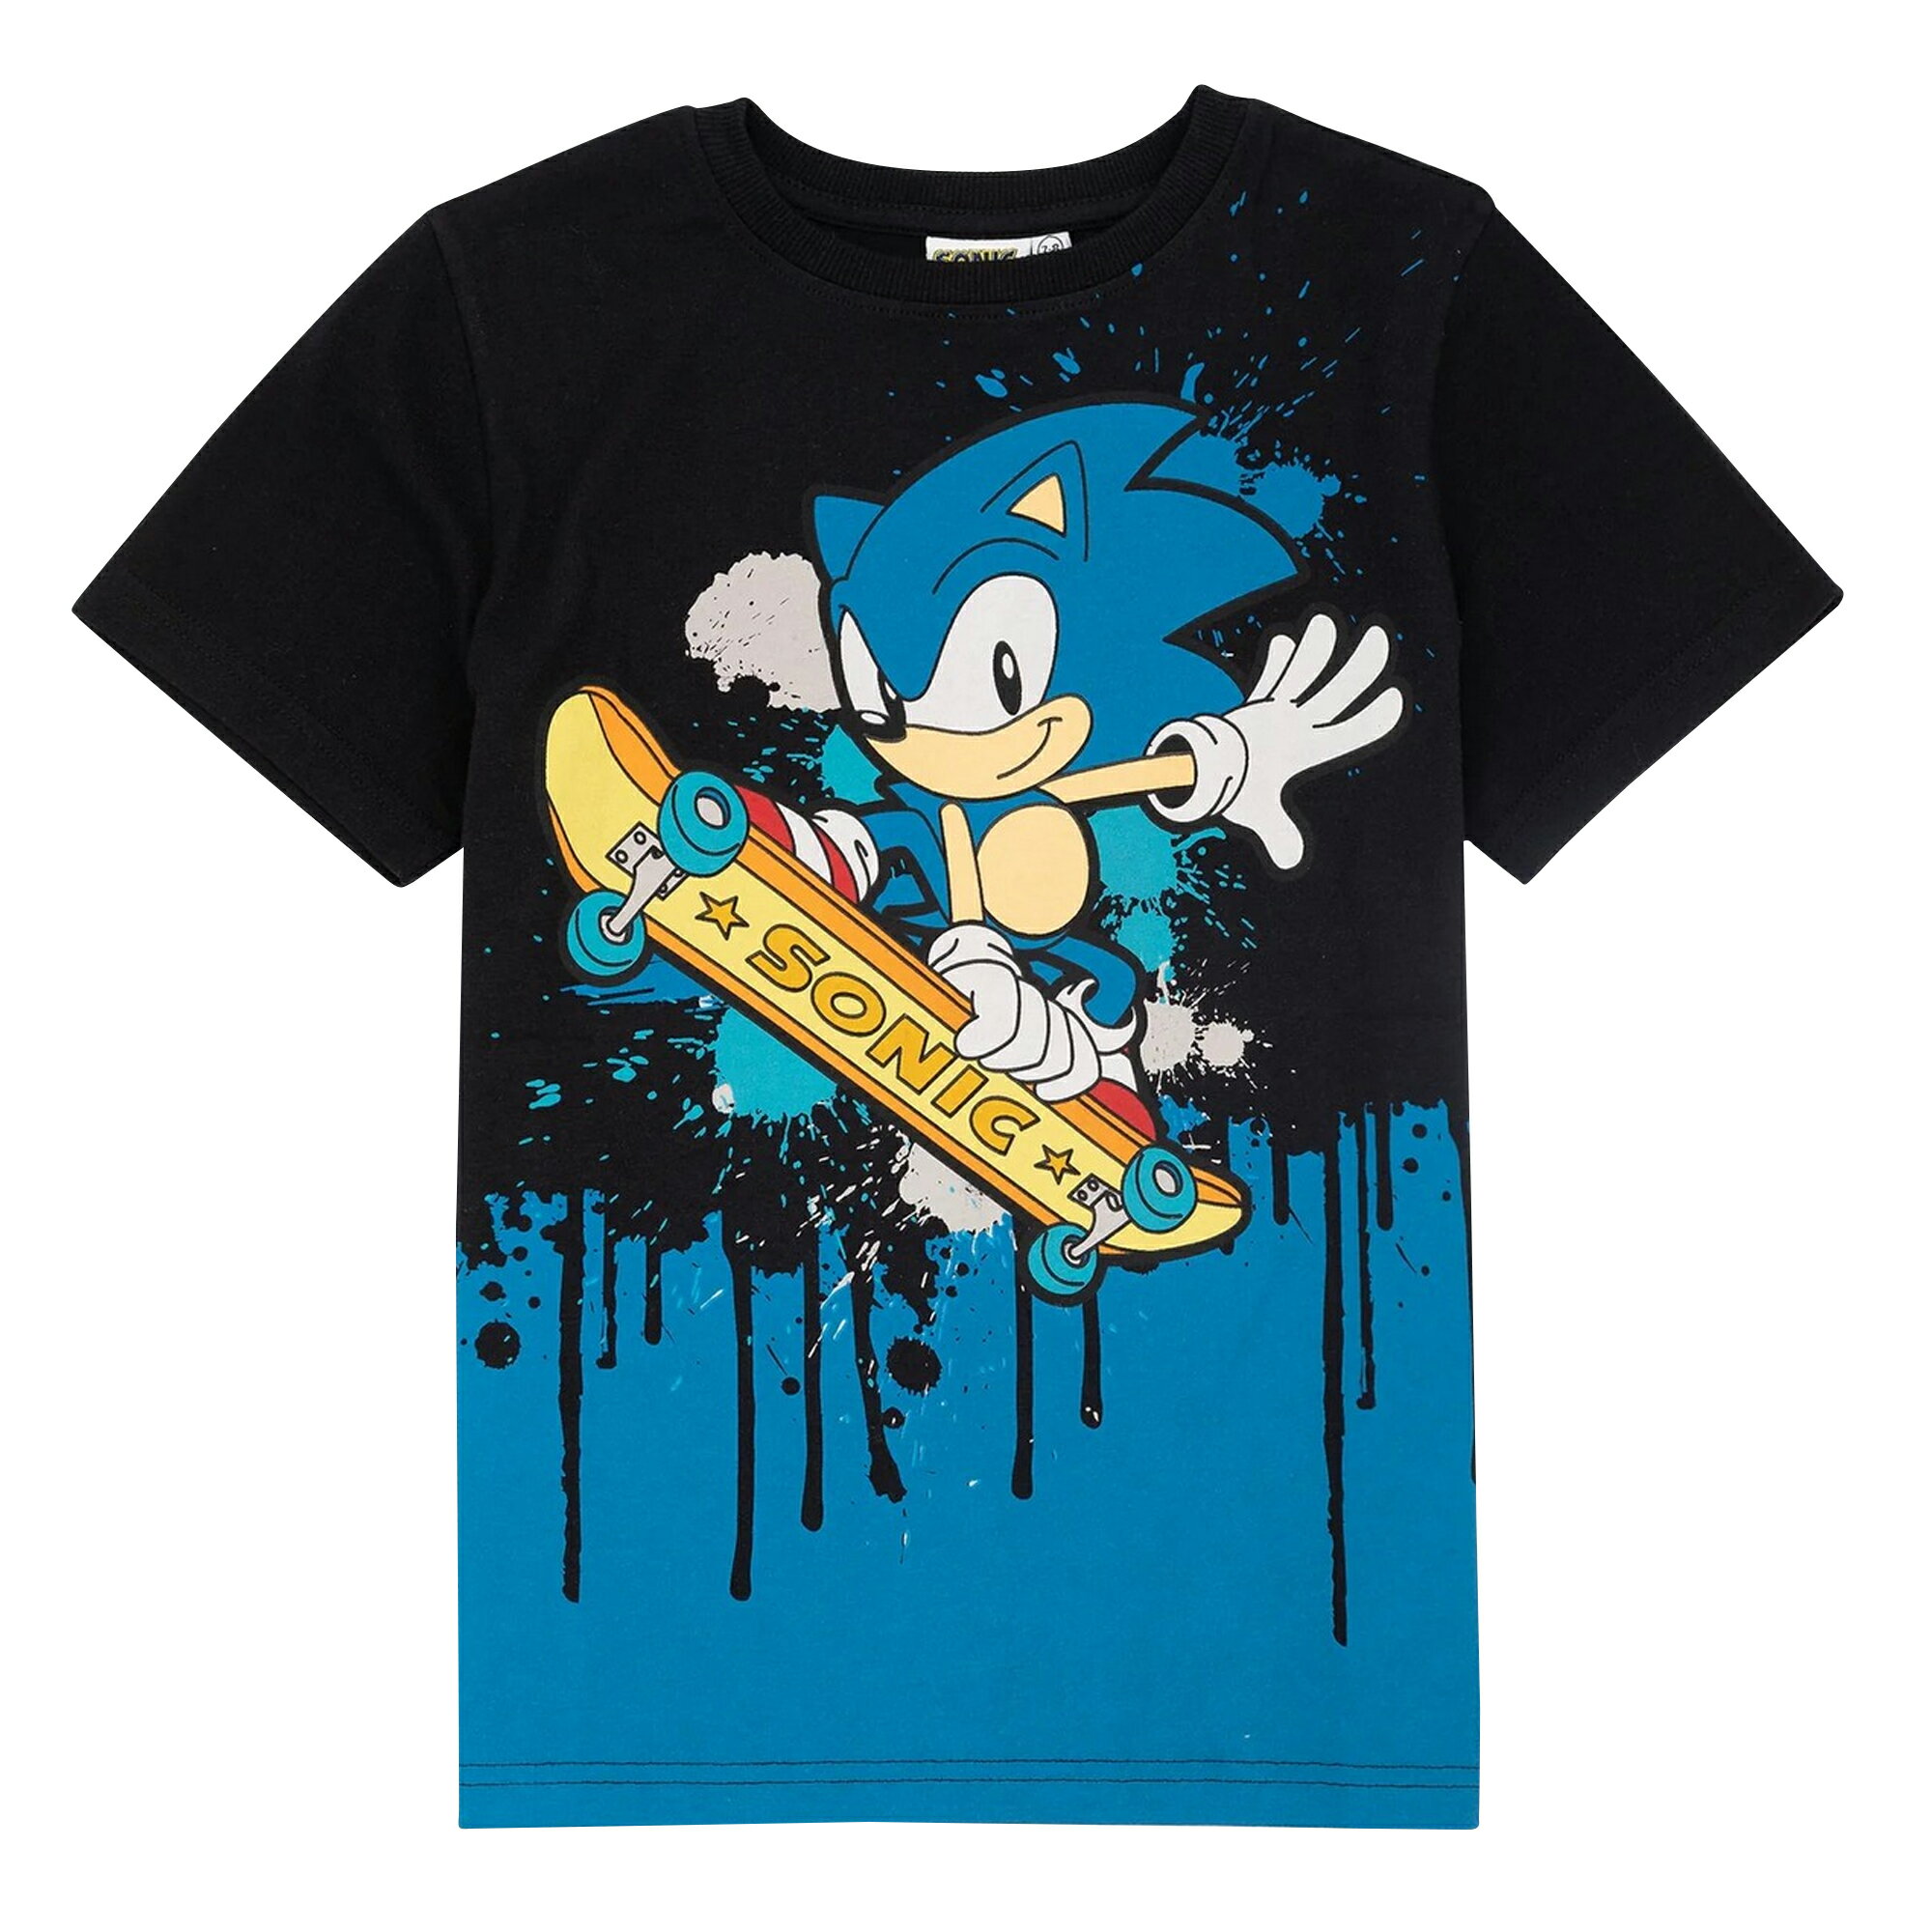 ソニック・ザ・ヘッジホッグ Sonic The Hedgehog オフィシャル商品 キッズ・子供 スケートボード Tシャツ 半袖 トップス カットソー 【海外通販】